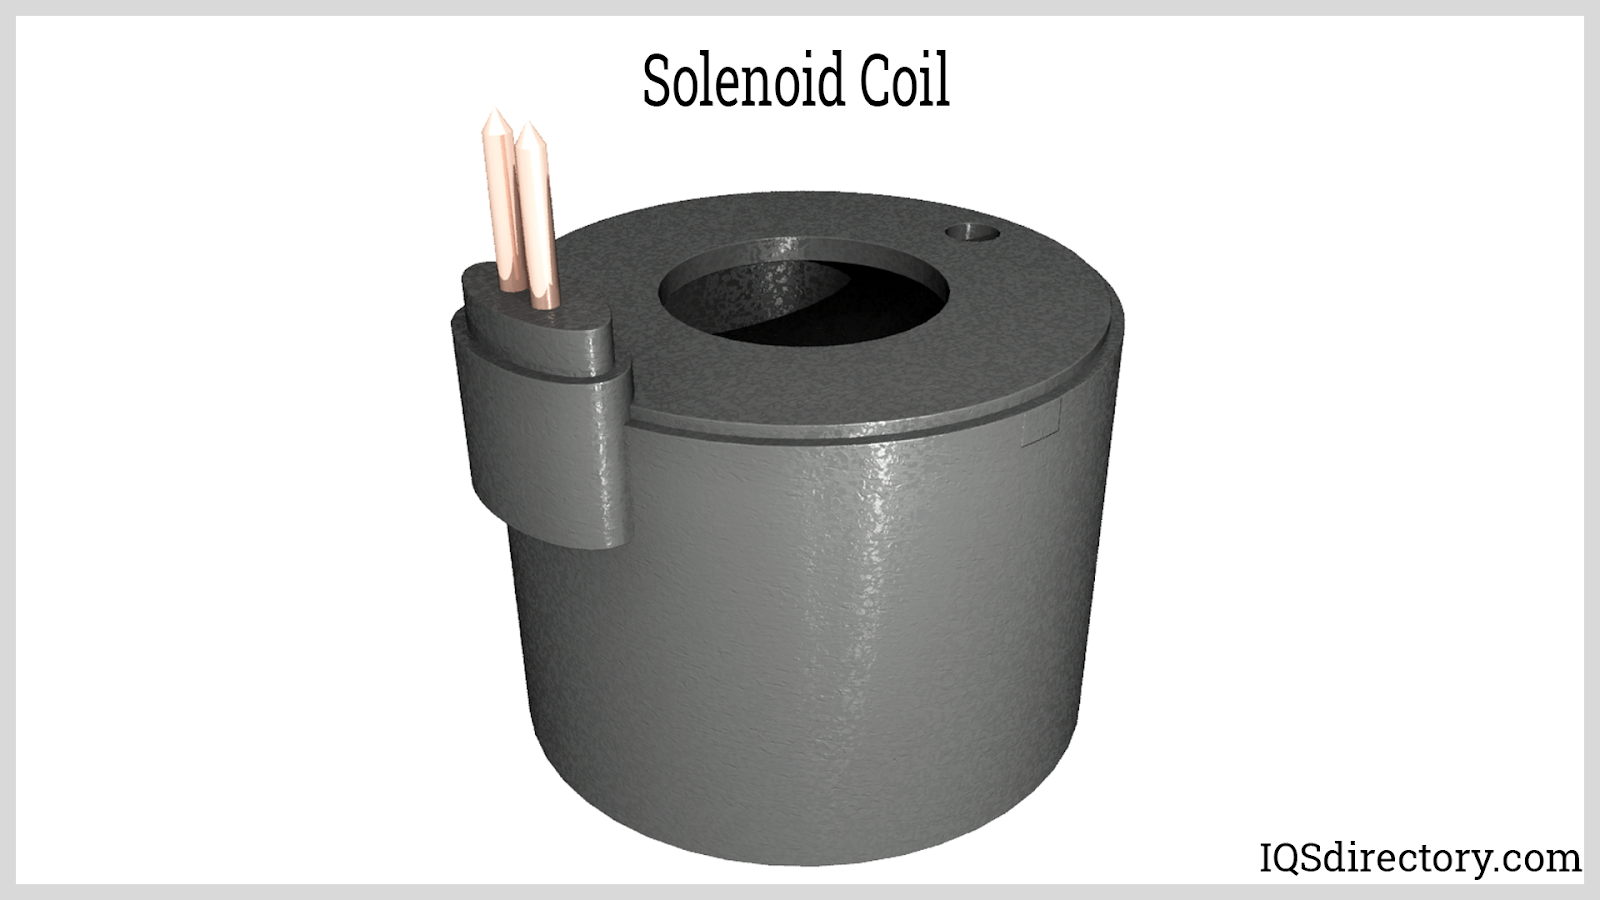 Solenoid Coils